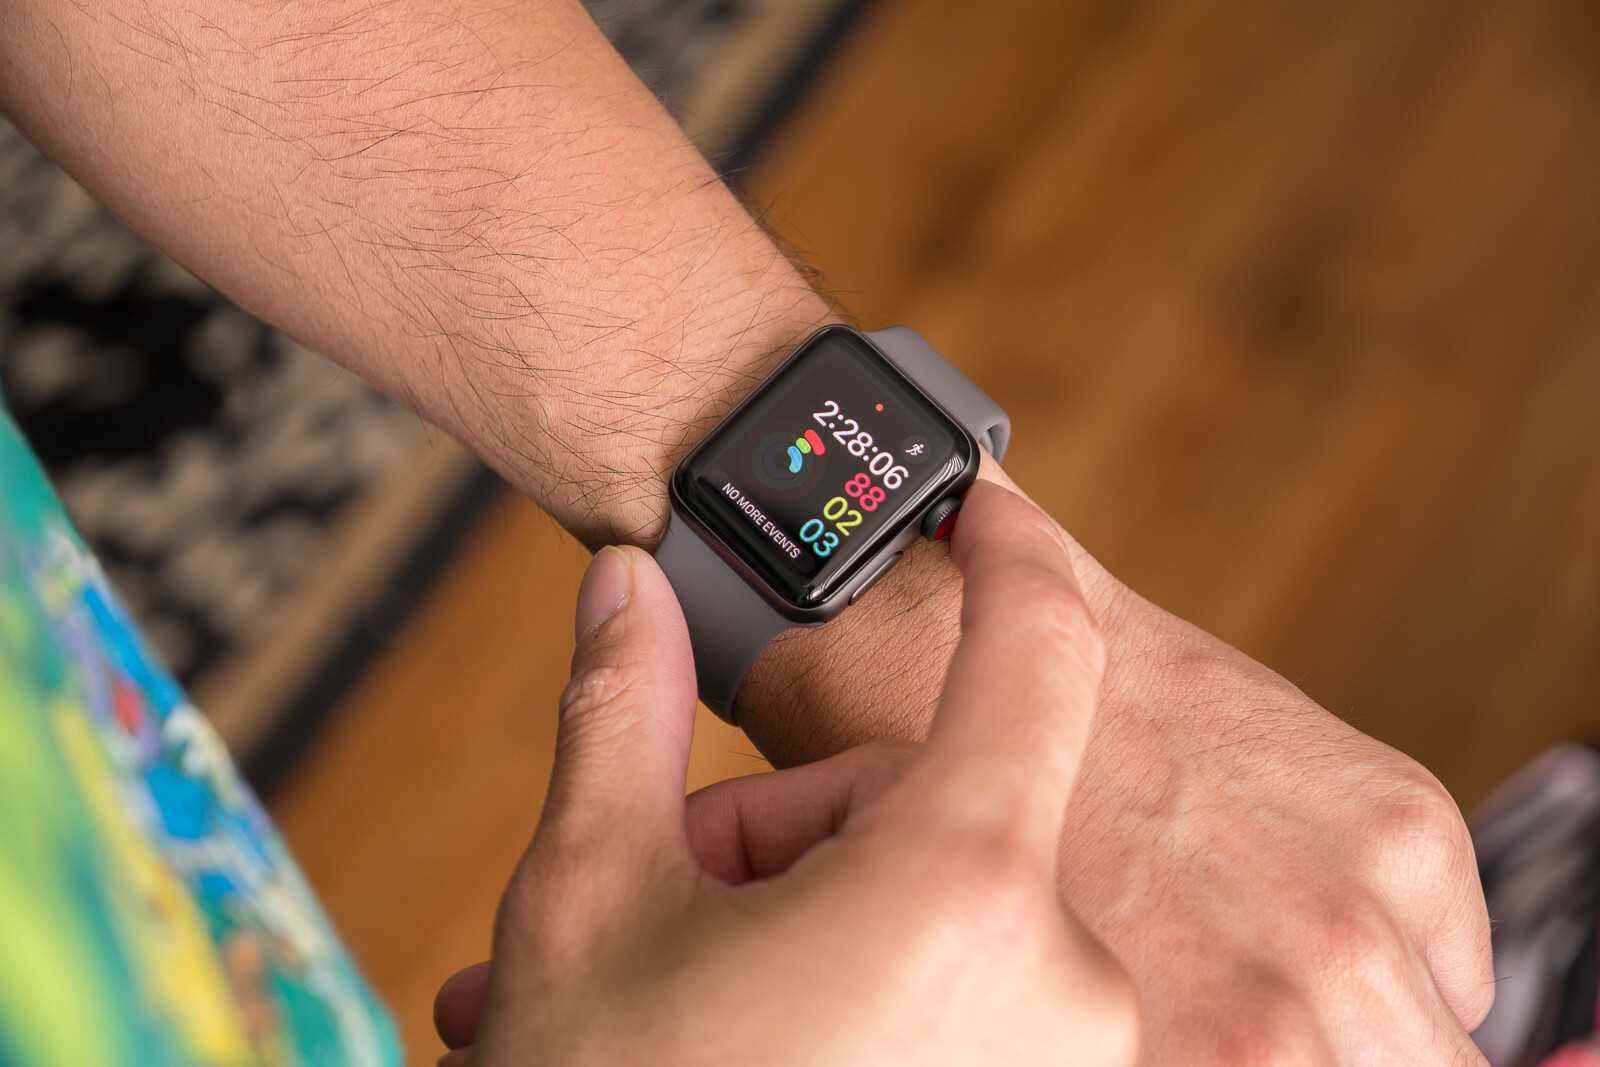 Die Apple Watch Series 7 und SE waren im ersten Quartal die weltweit meistverkauften Smartwatches